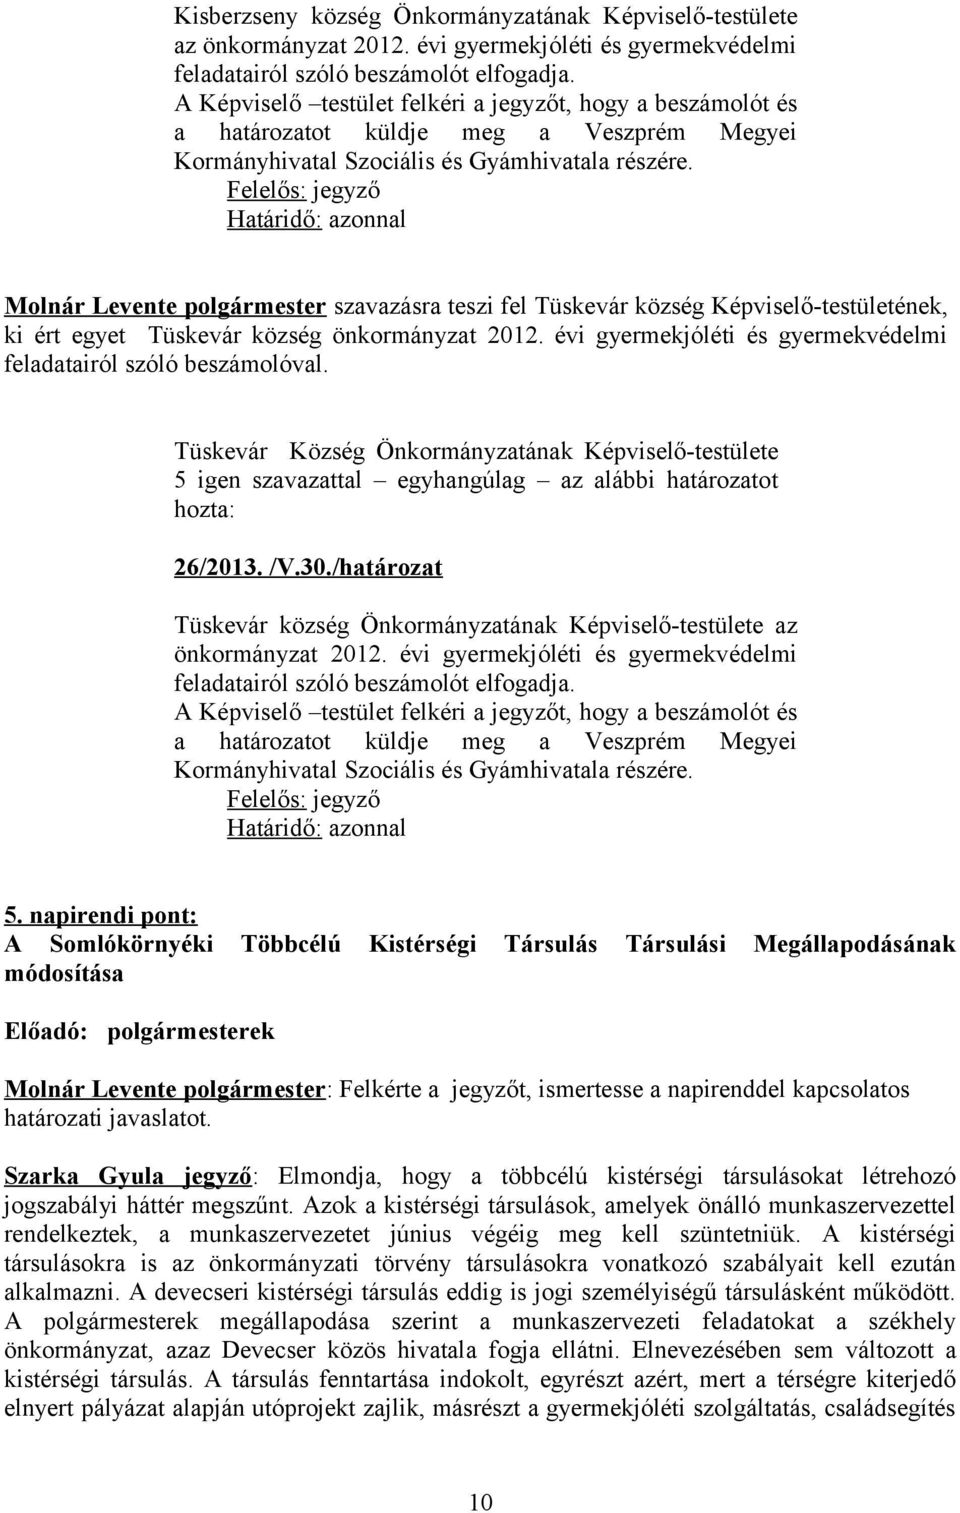 Felelős: jegyző Molnár Levente polgármester szavazásra teszi fel Tüskevár község Képviselő-testületének, ki ért egyet Tüskevár község önkormányzat 2012.